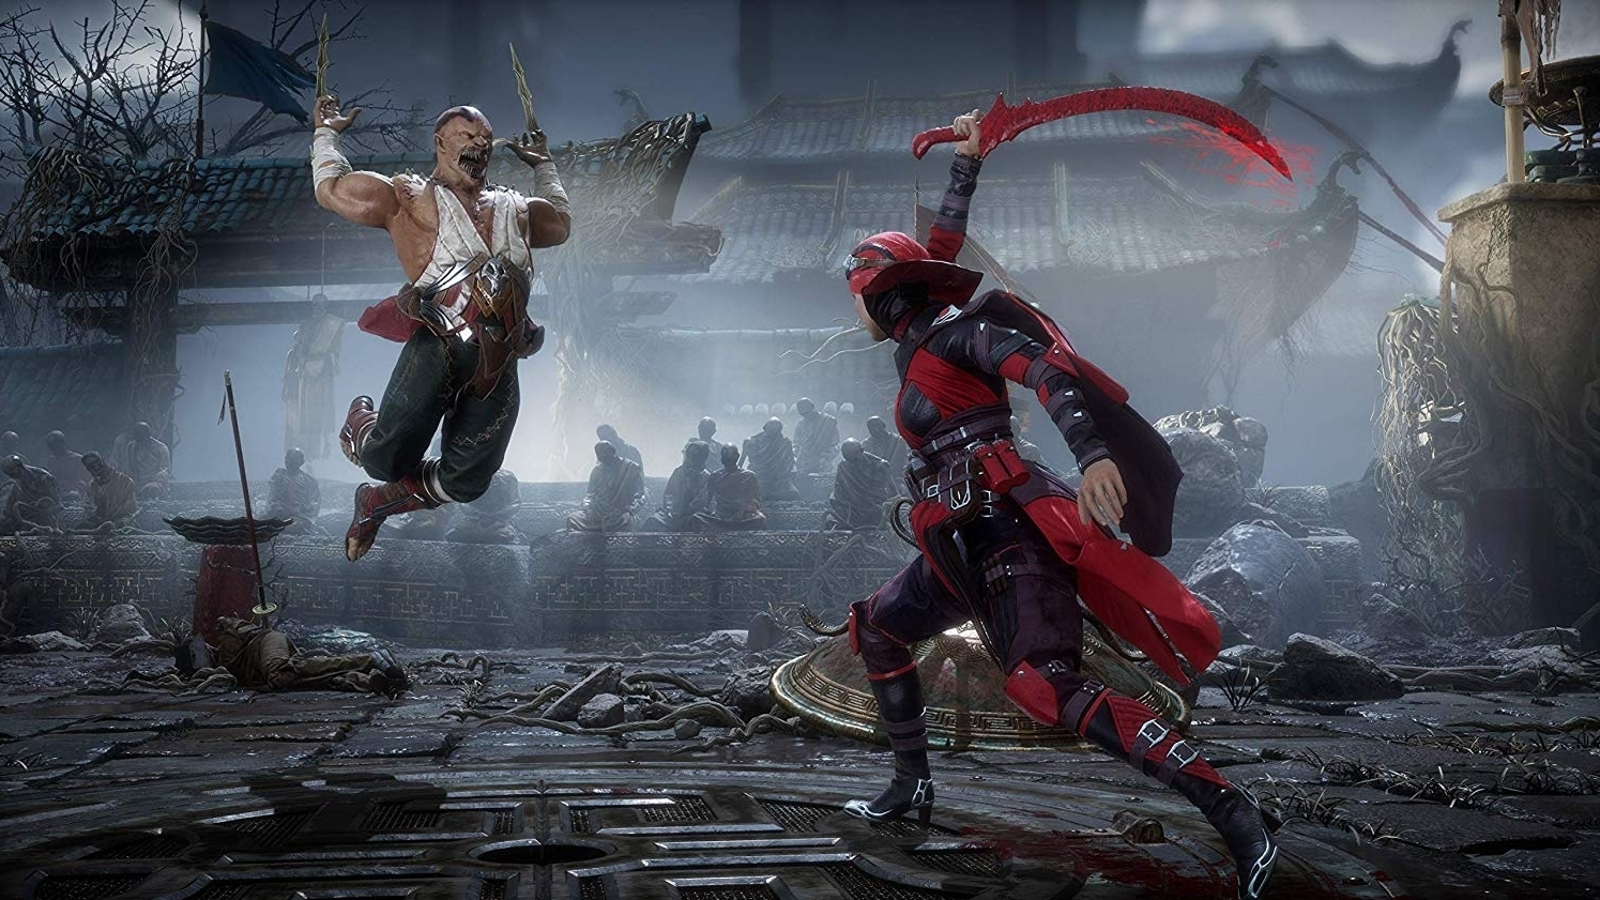 Mais personagens clássicas para Mortal Kombat X